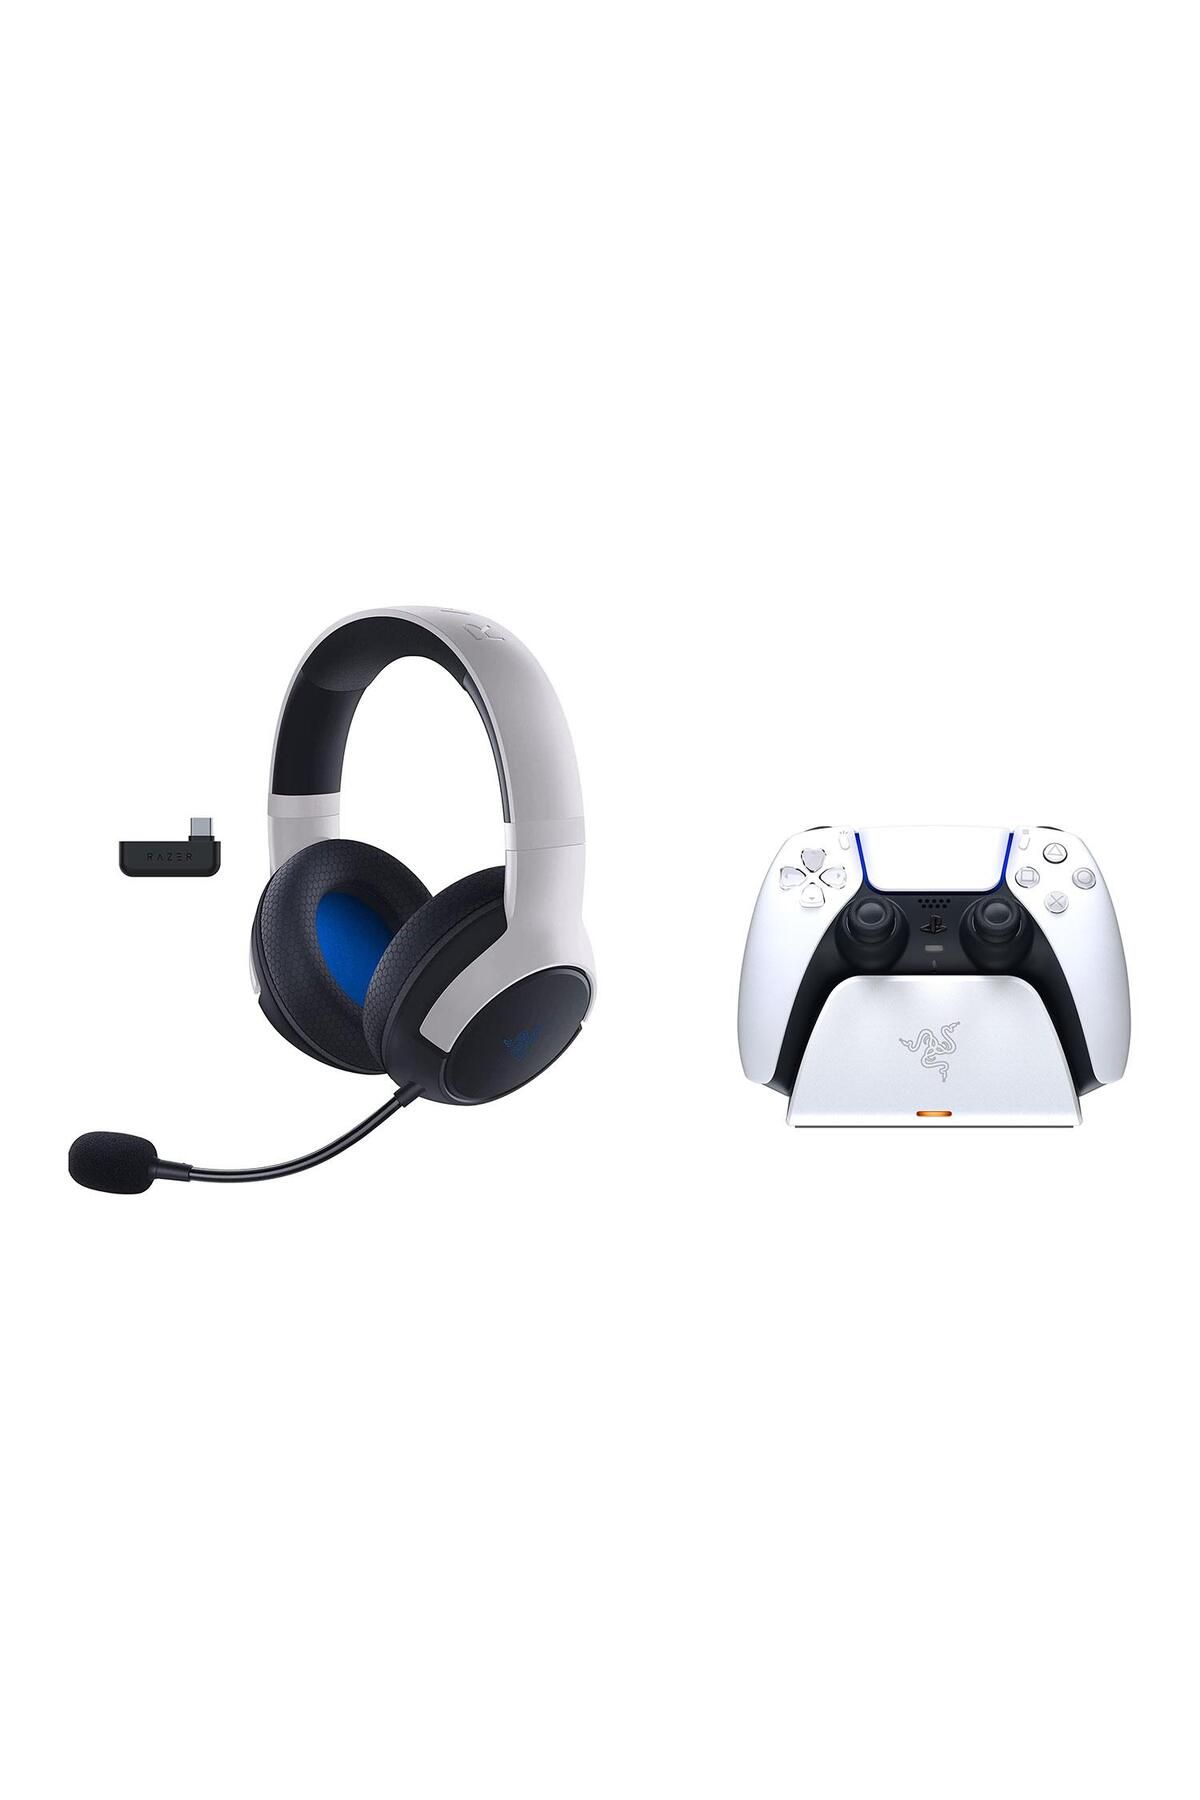 Razer Kaira Pro for PlayStation Kablosuz Mikrofonlu Kulak Üstü